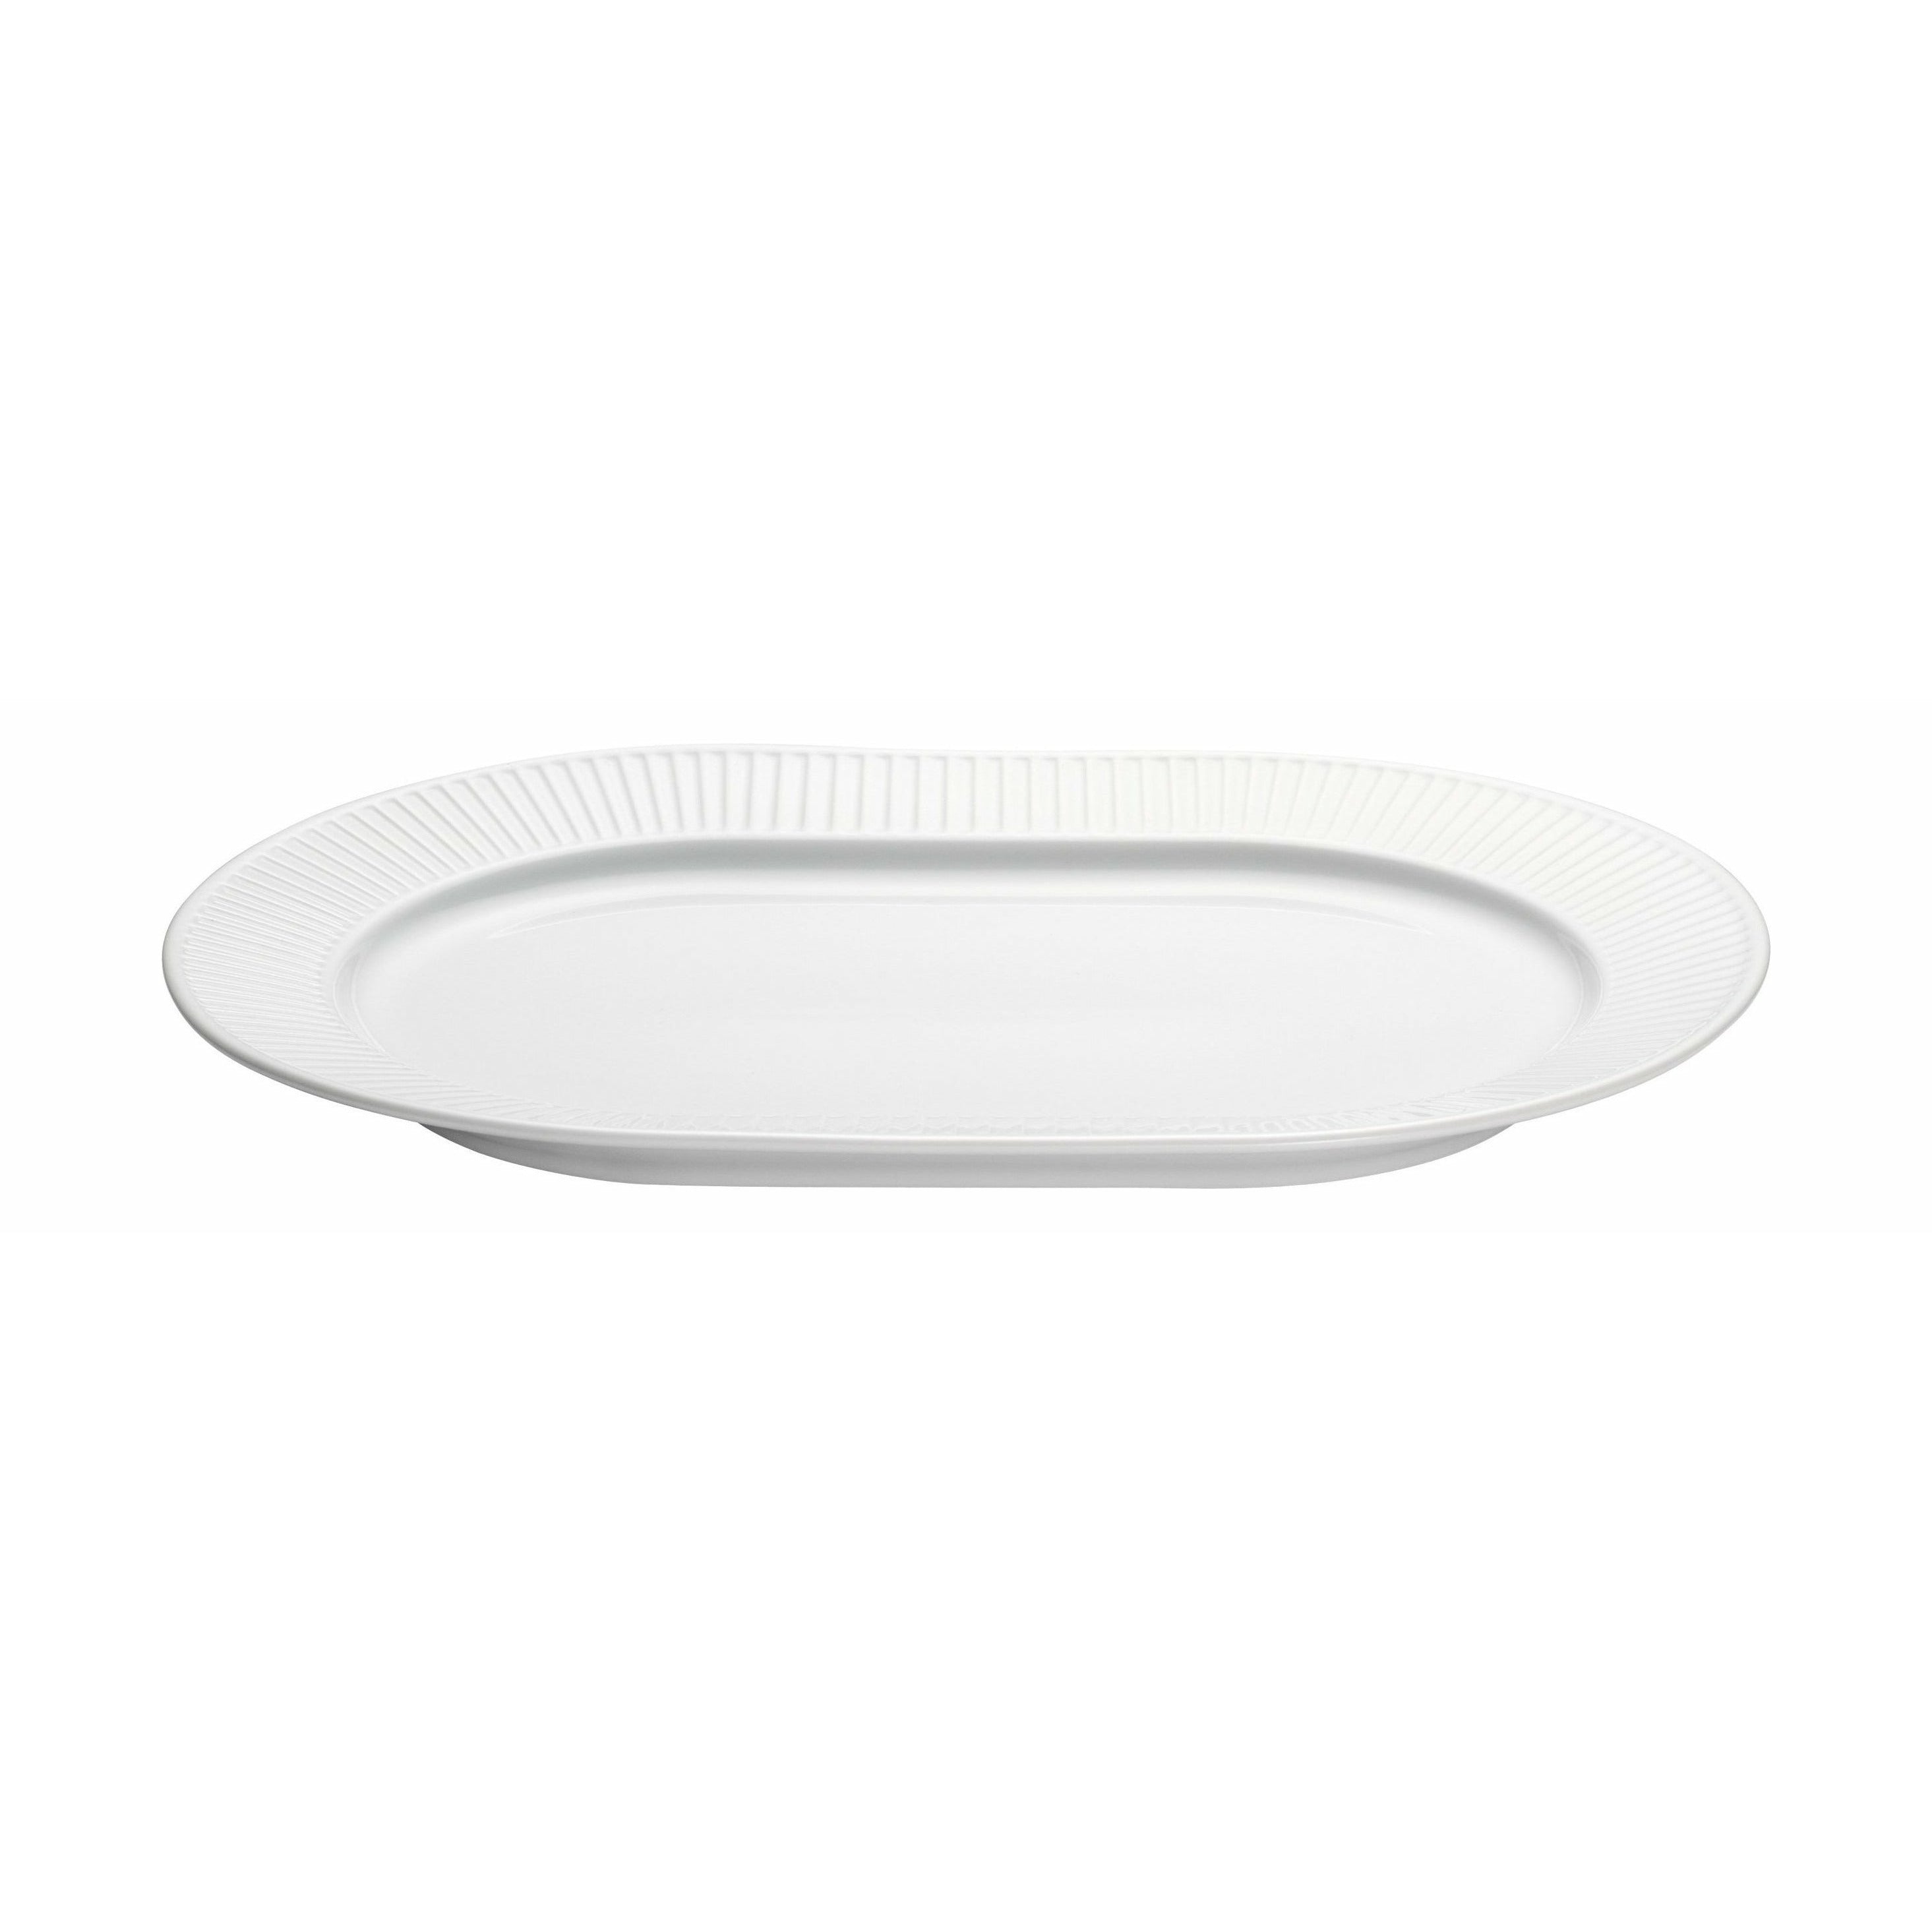 Plivuyt Plissé Service Plate ovale, 36 cm